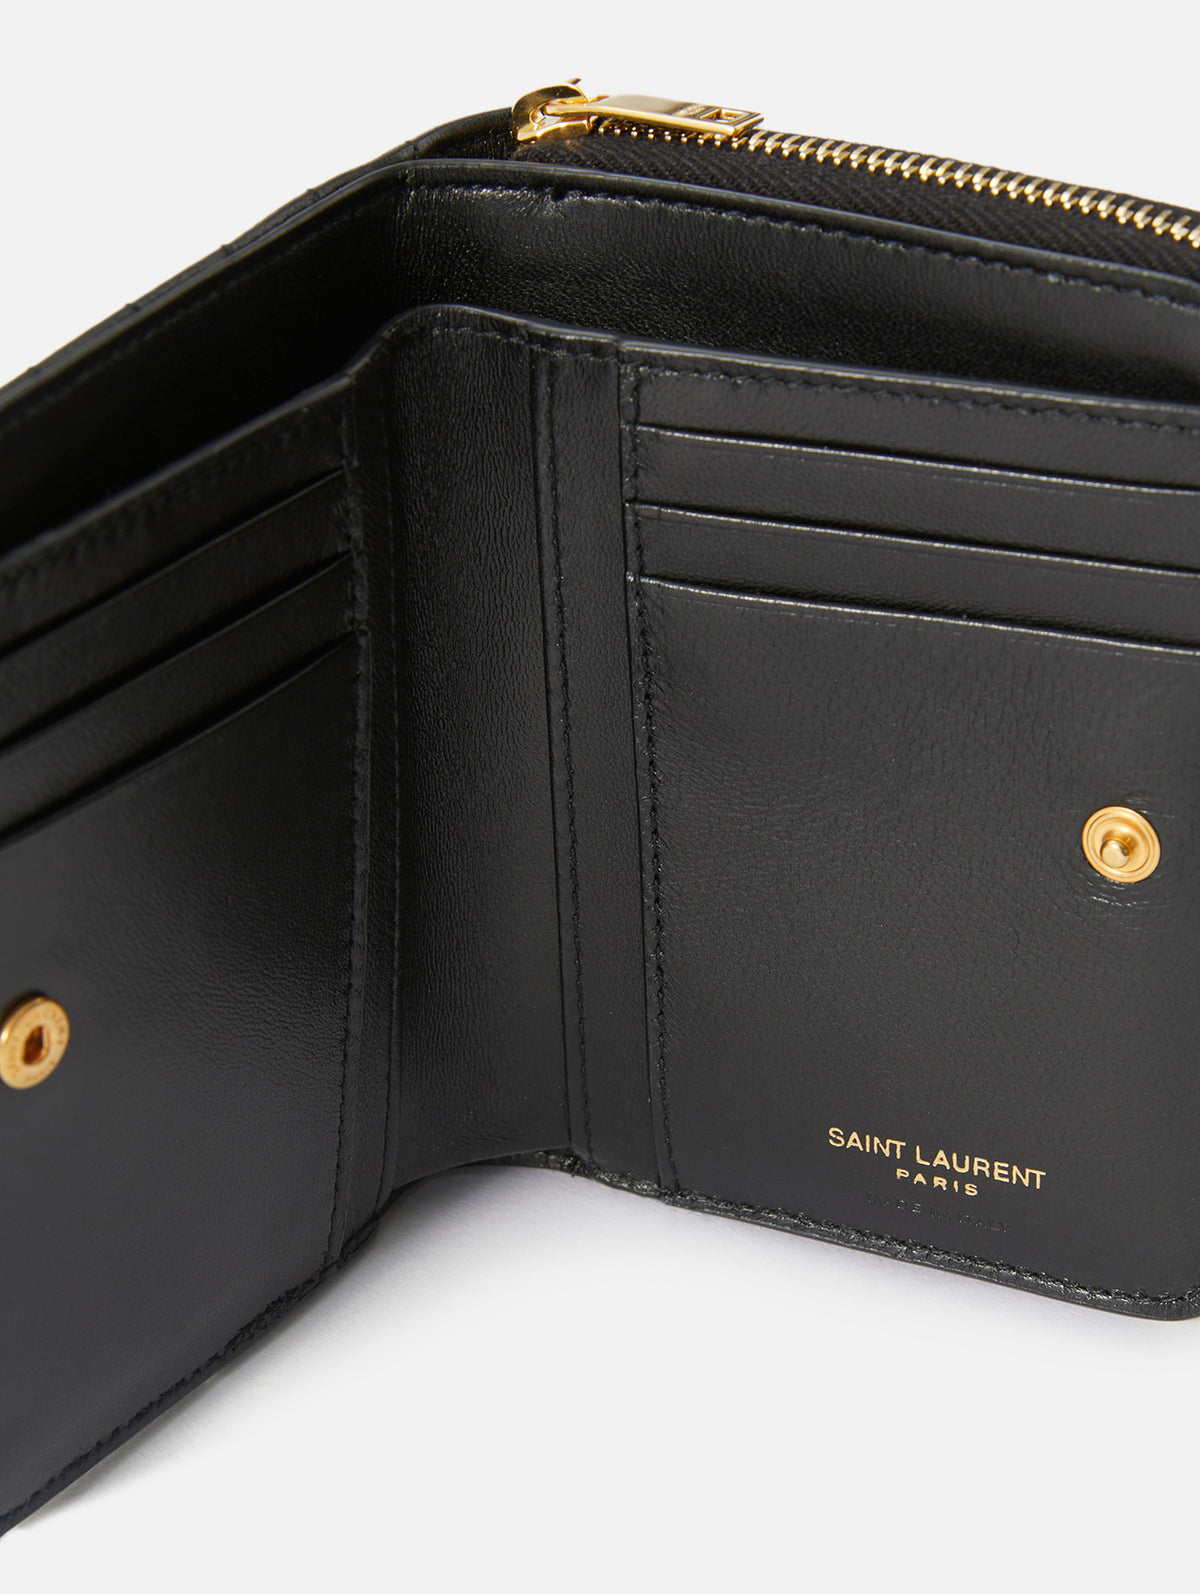 YSL Saint Laurent Card Wallet, card holder, designer, gold and black